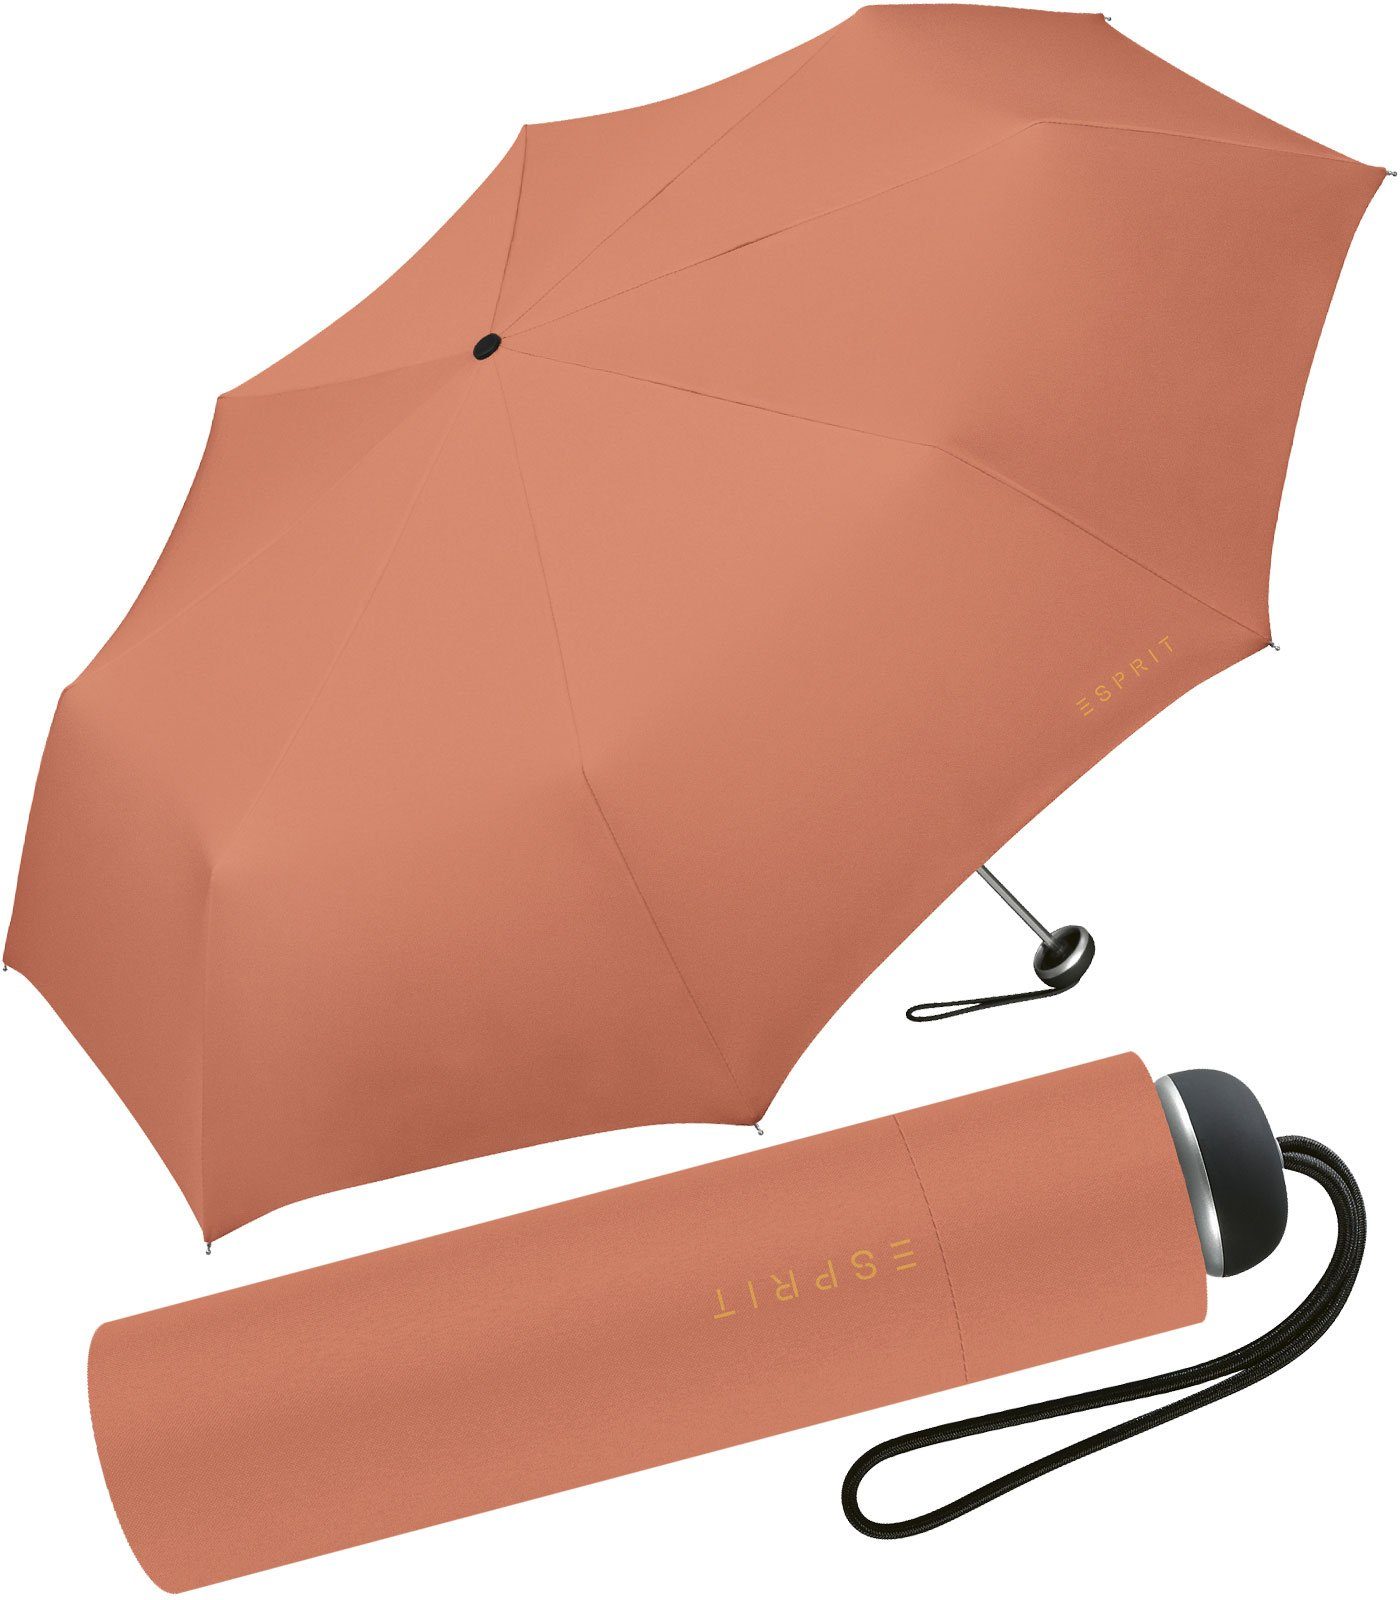 Esprit Taschenregenschirm leichter, handlicher Schirm für Damen, Begleiter in modischen Farben - apricot brandy orange